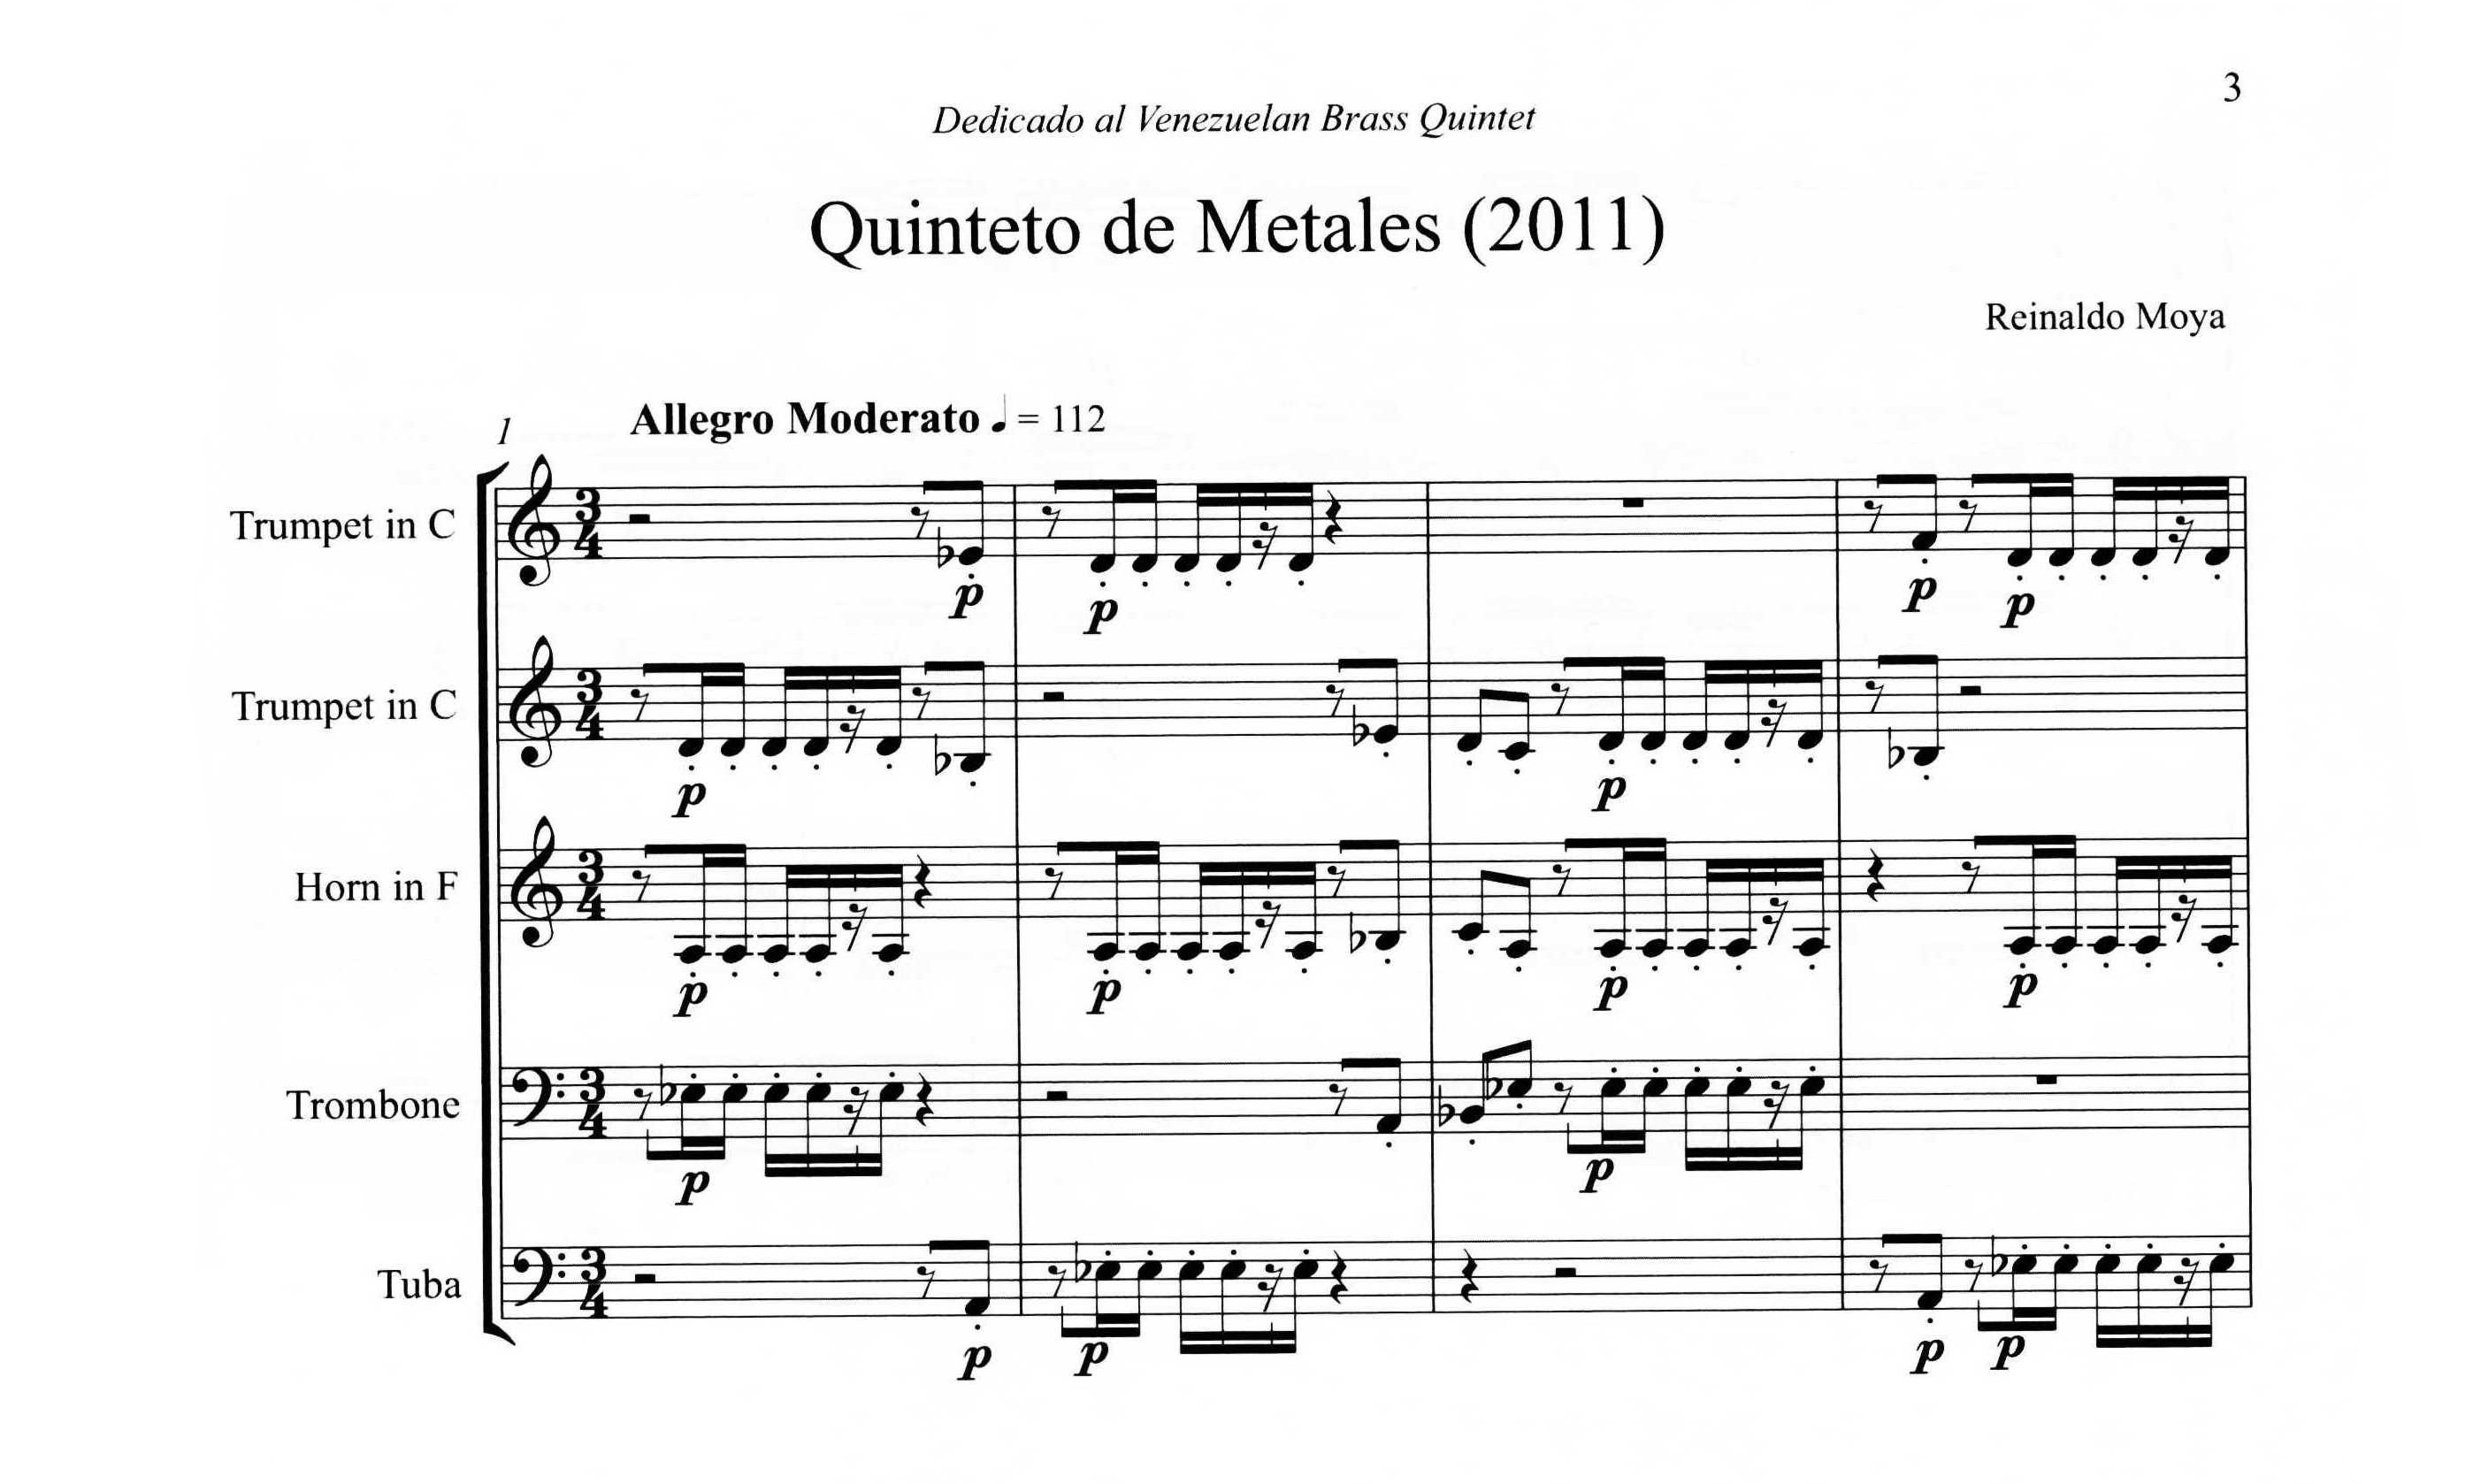 Moya, Reinaldo - Quinteto de Metales